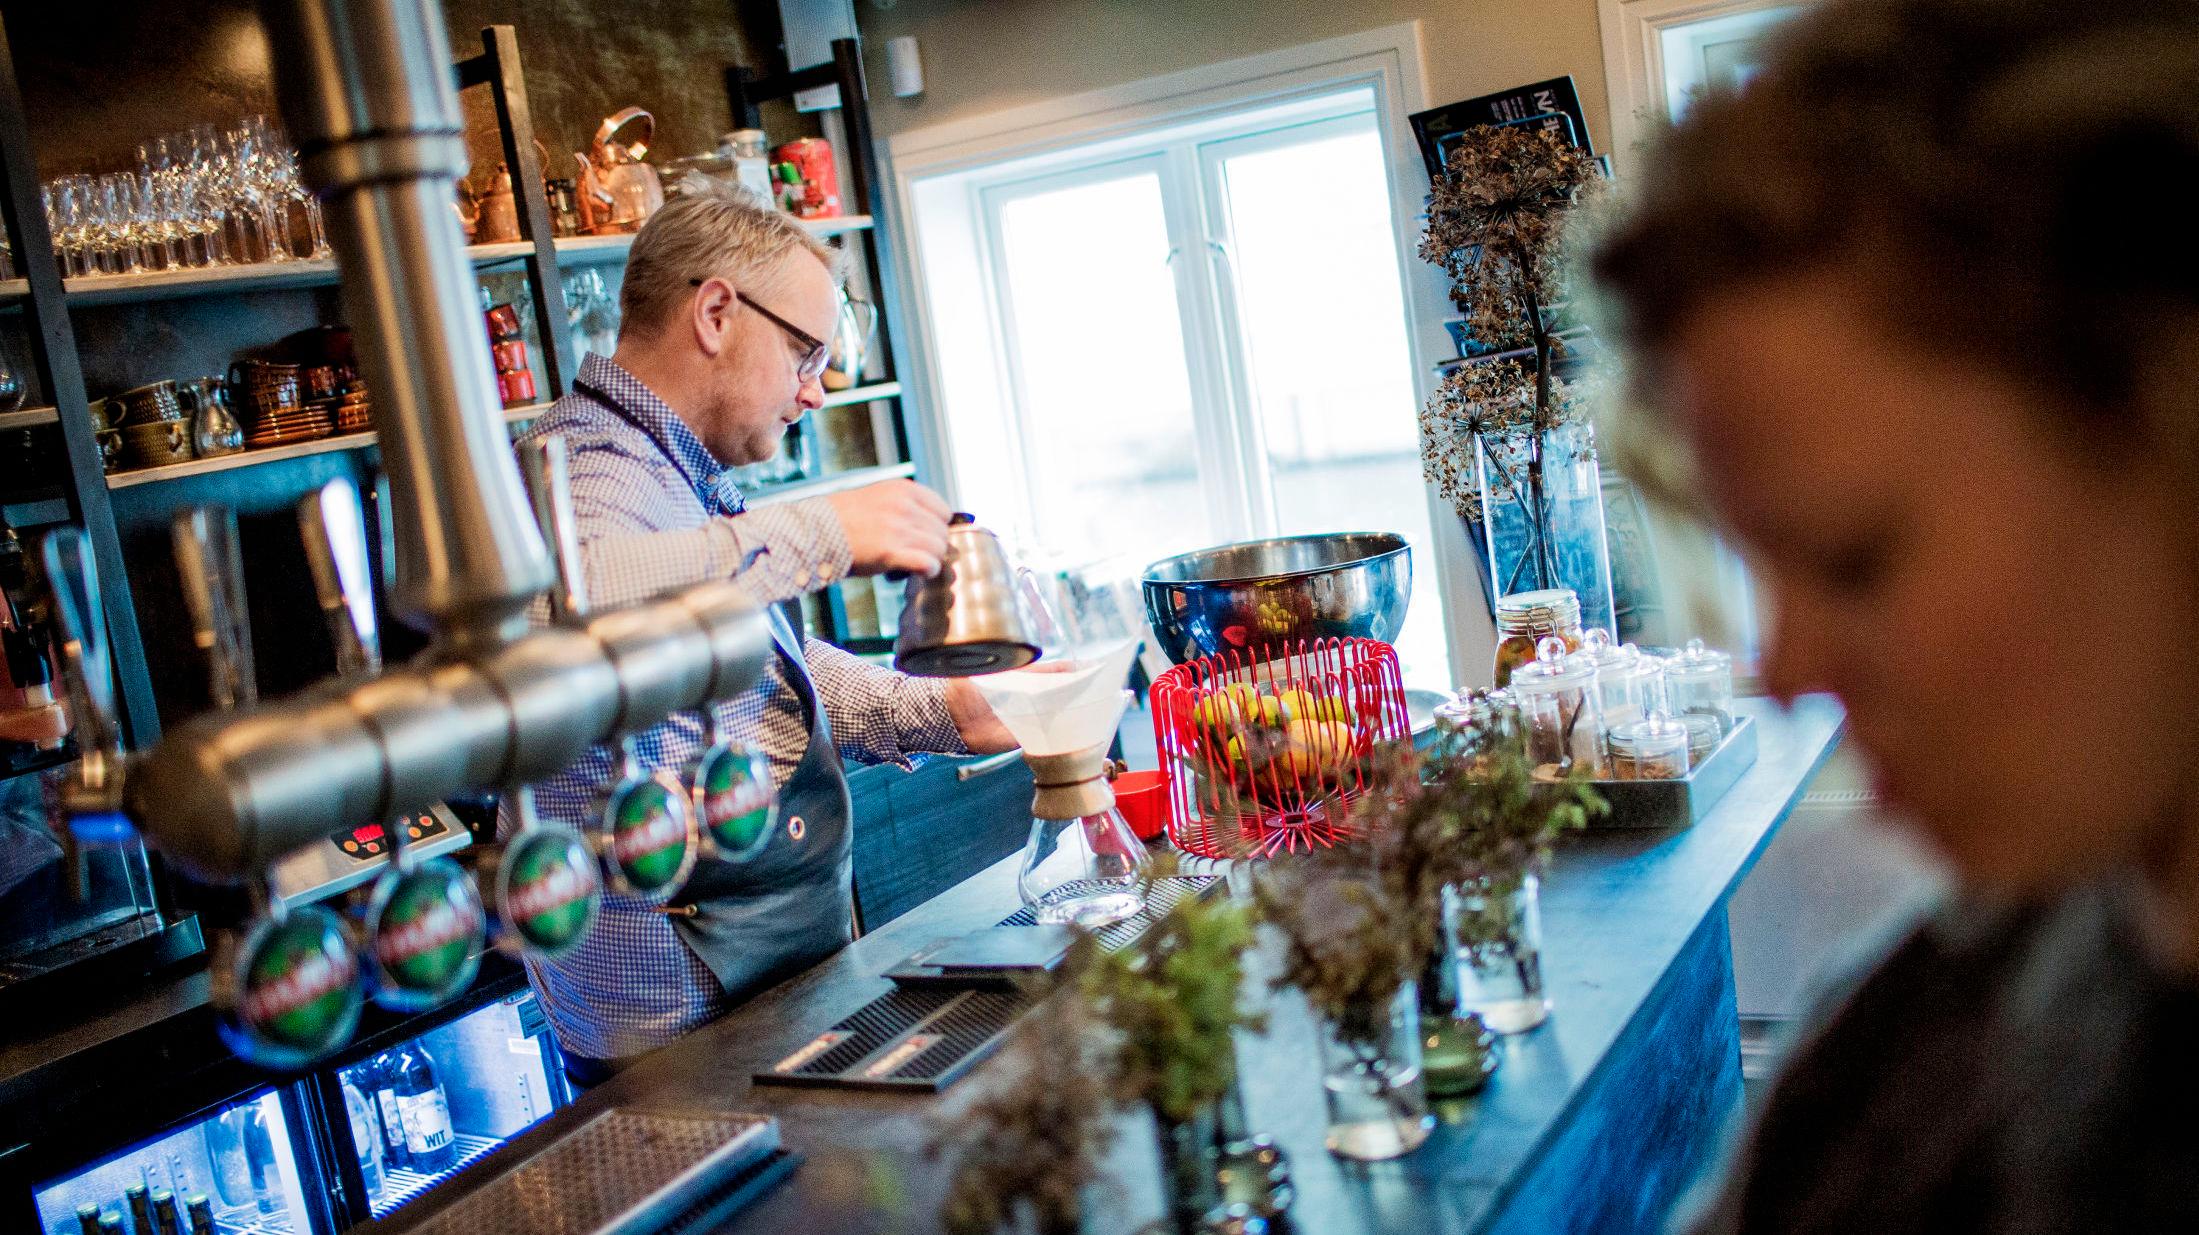 ENKELT: Spiserommet på Jossa Mat og Drikke minner mer om en kaffebar enn en rastaurant, Og bak baren står Steffen Kolstad og serverer kaffe. Foto: Øyvind Nordahl Næss